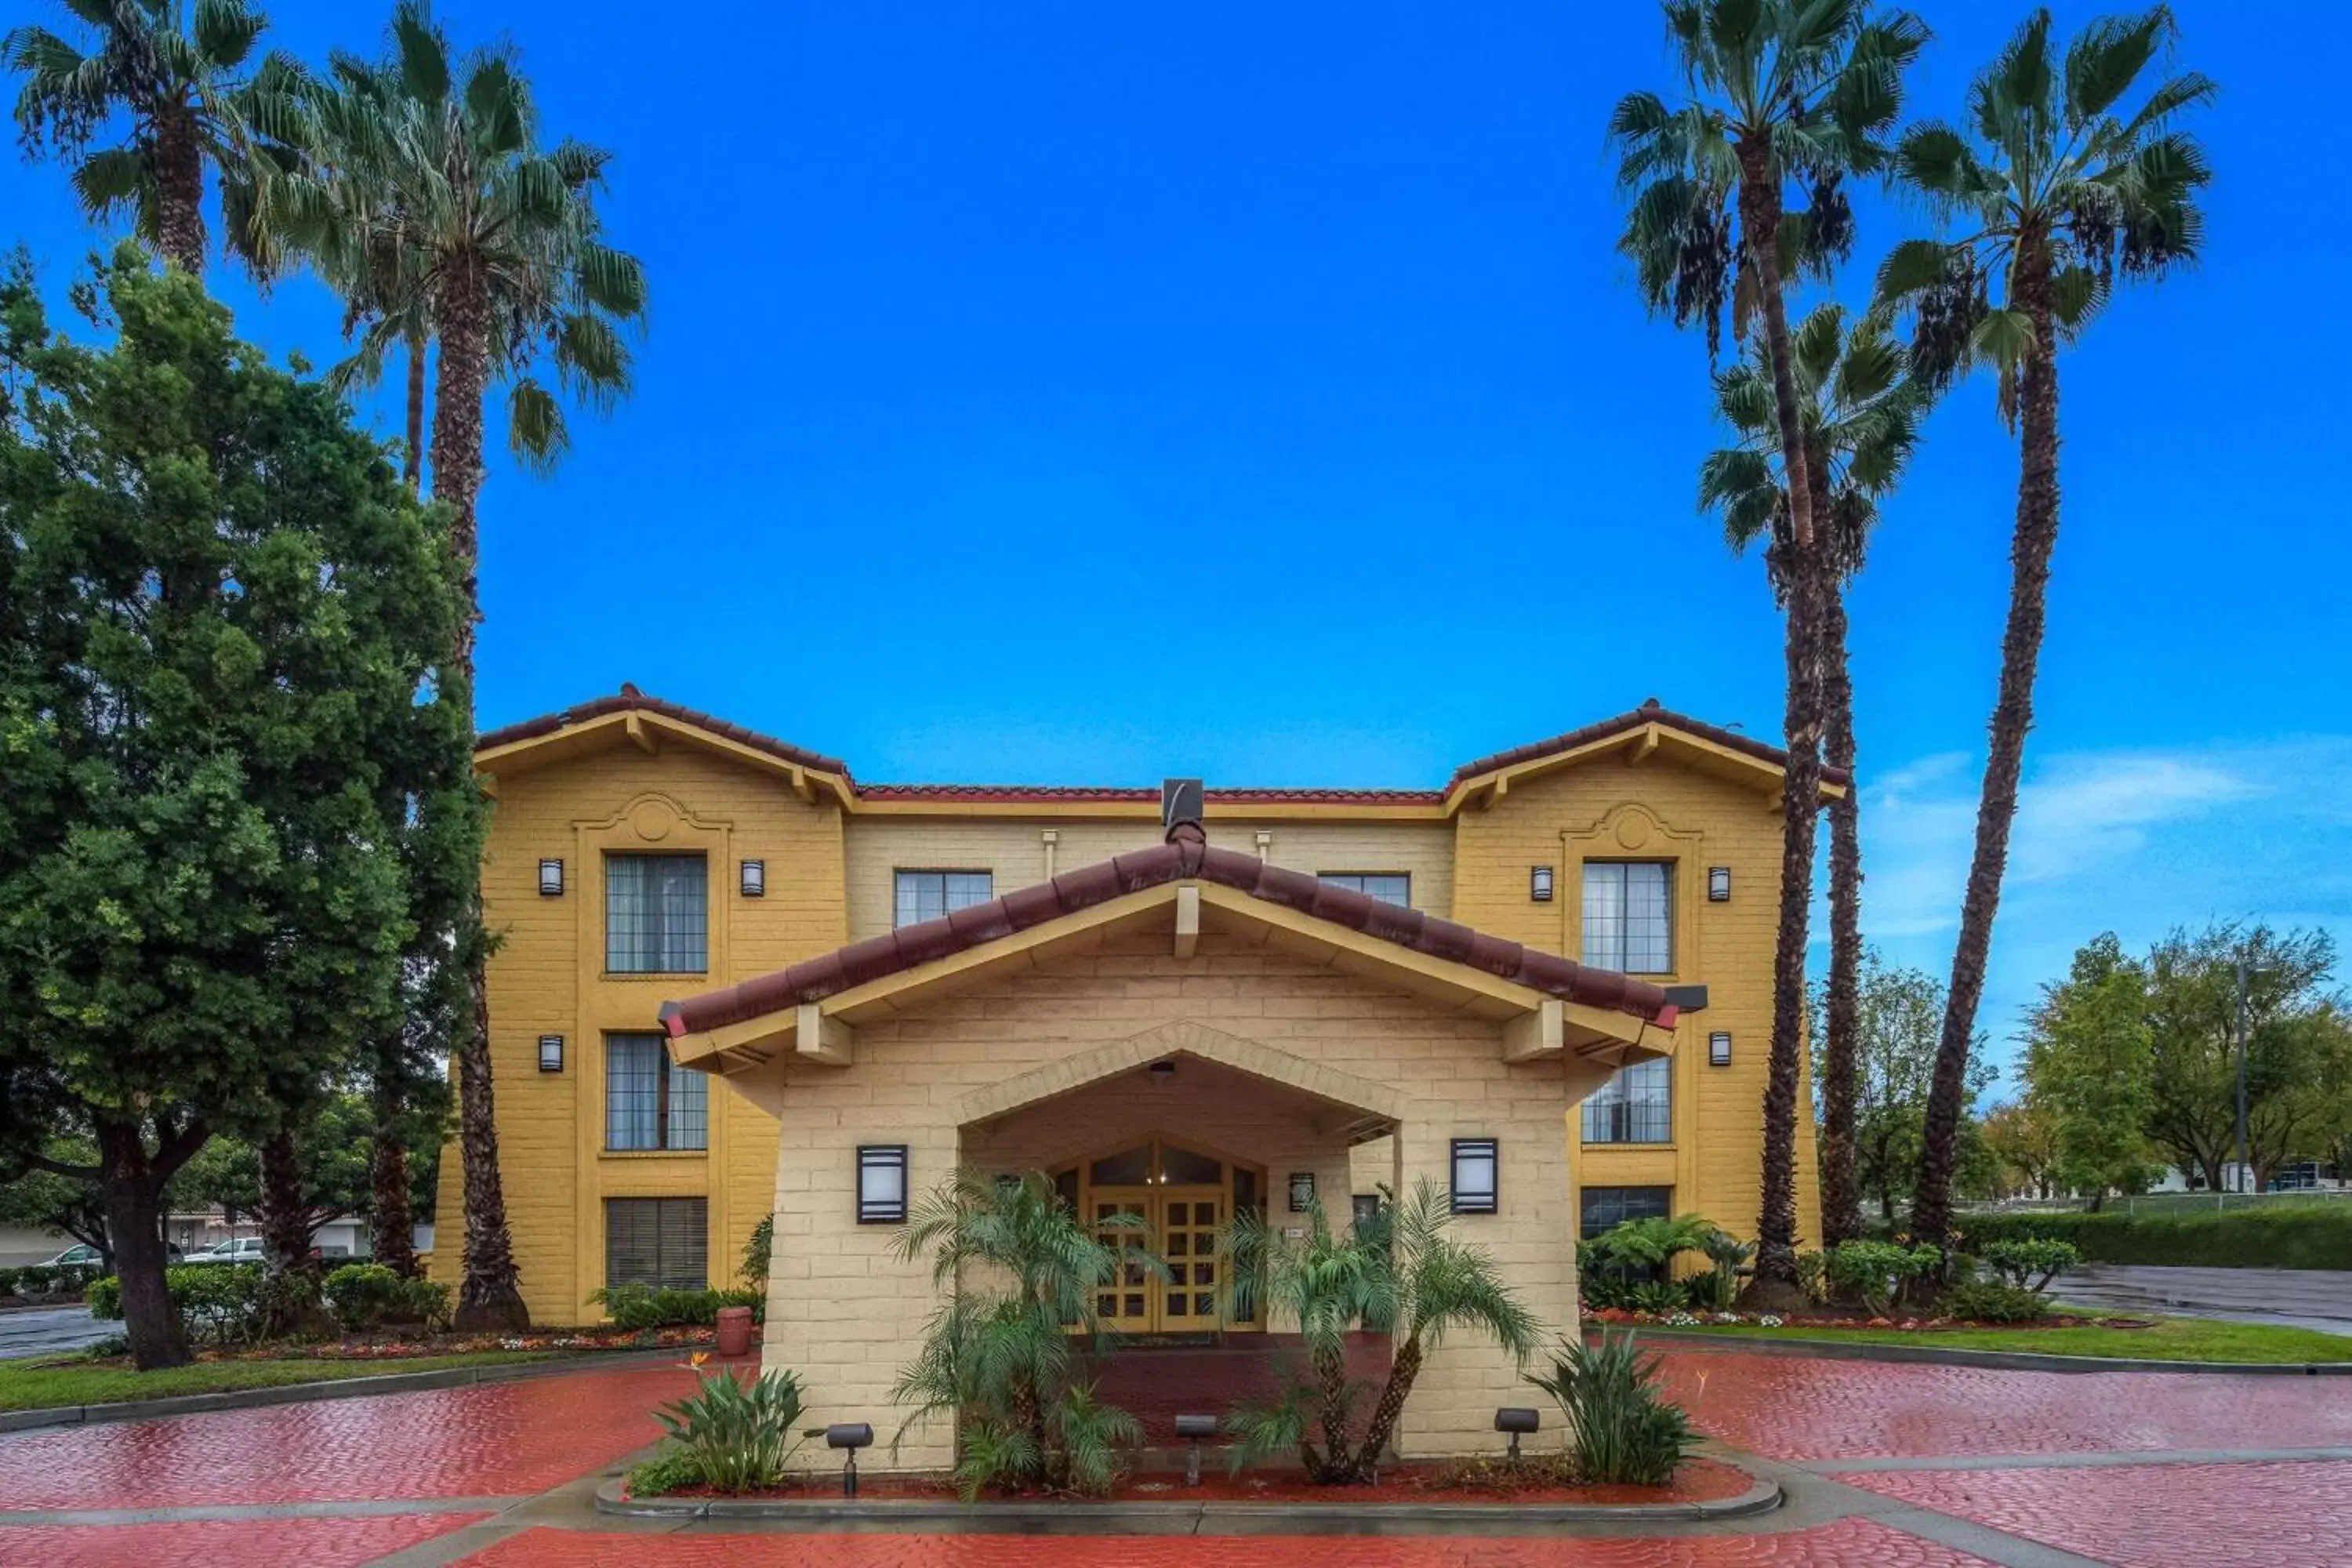 Property Building in La Quinta Inn by Wyndham San Diego Vista